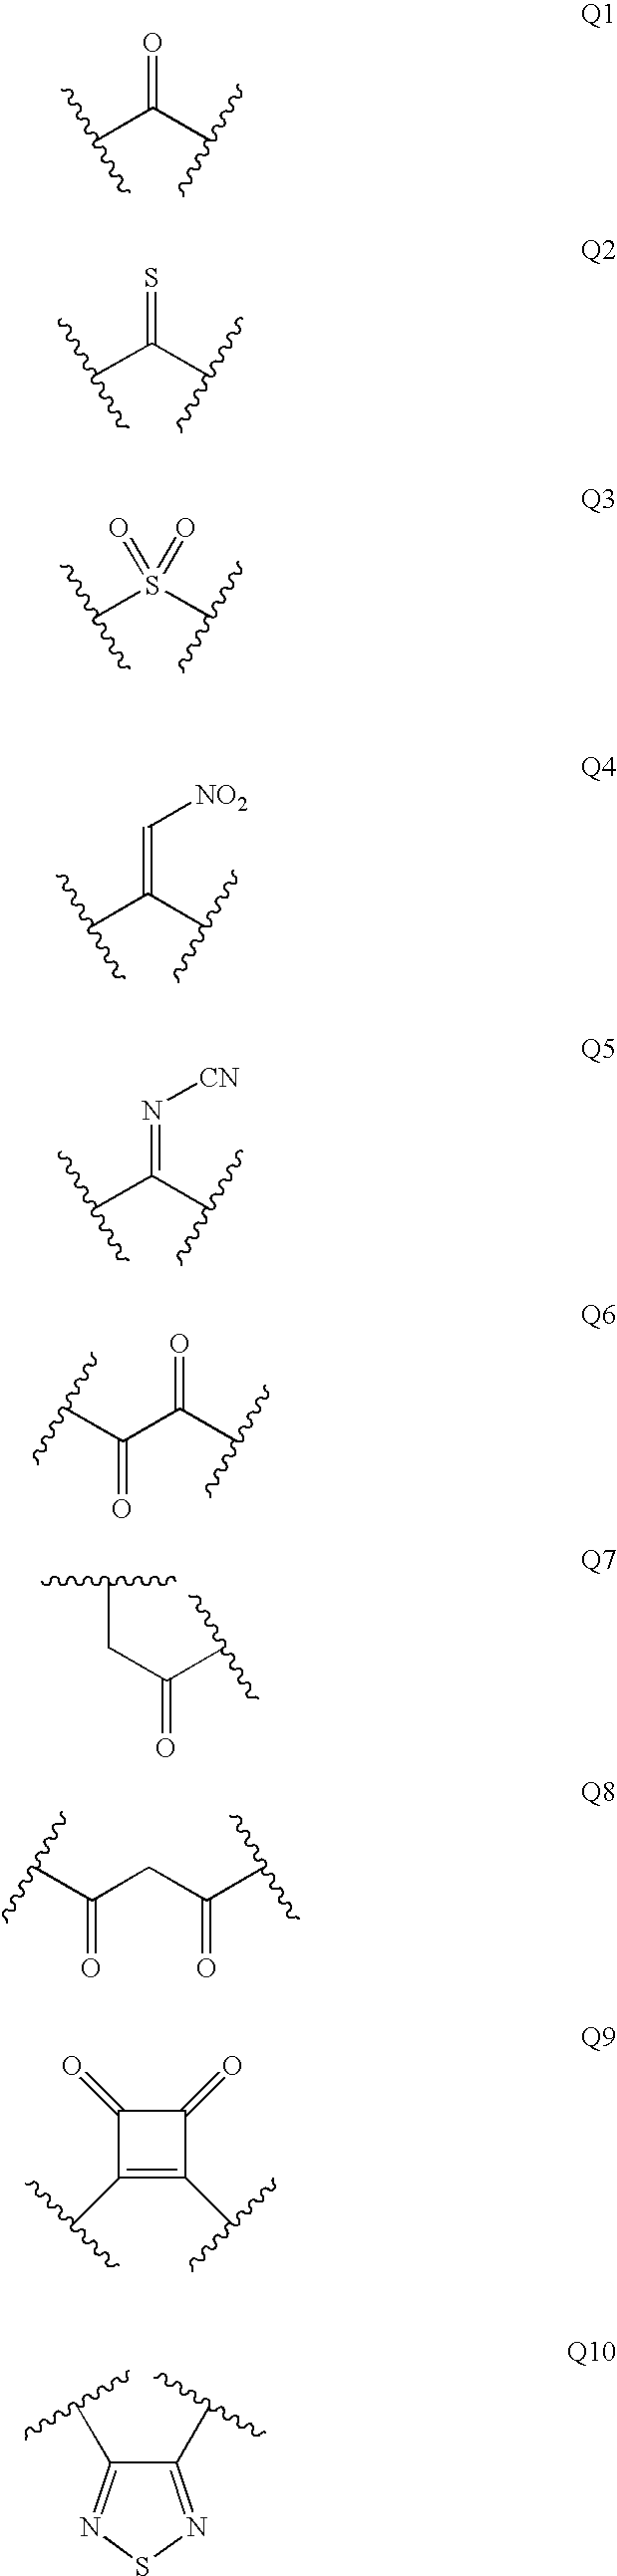 Diaminopropanol renin inhibitors